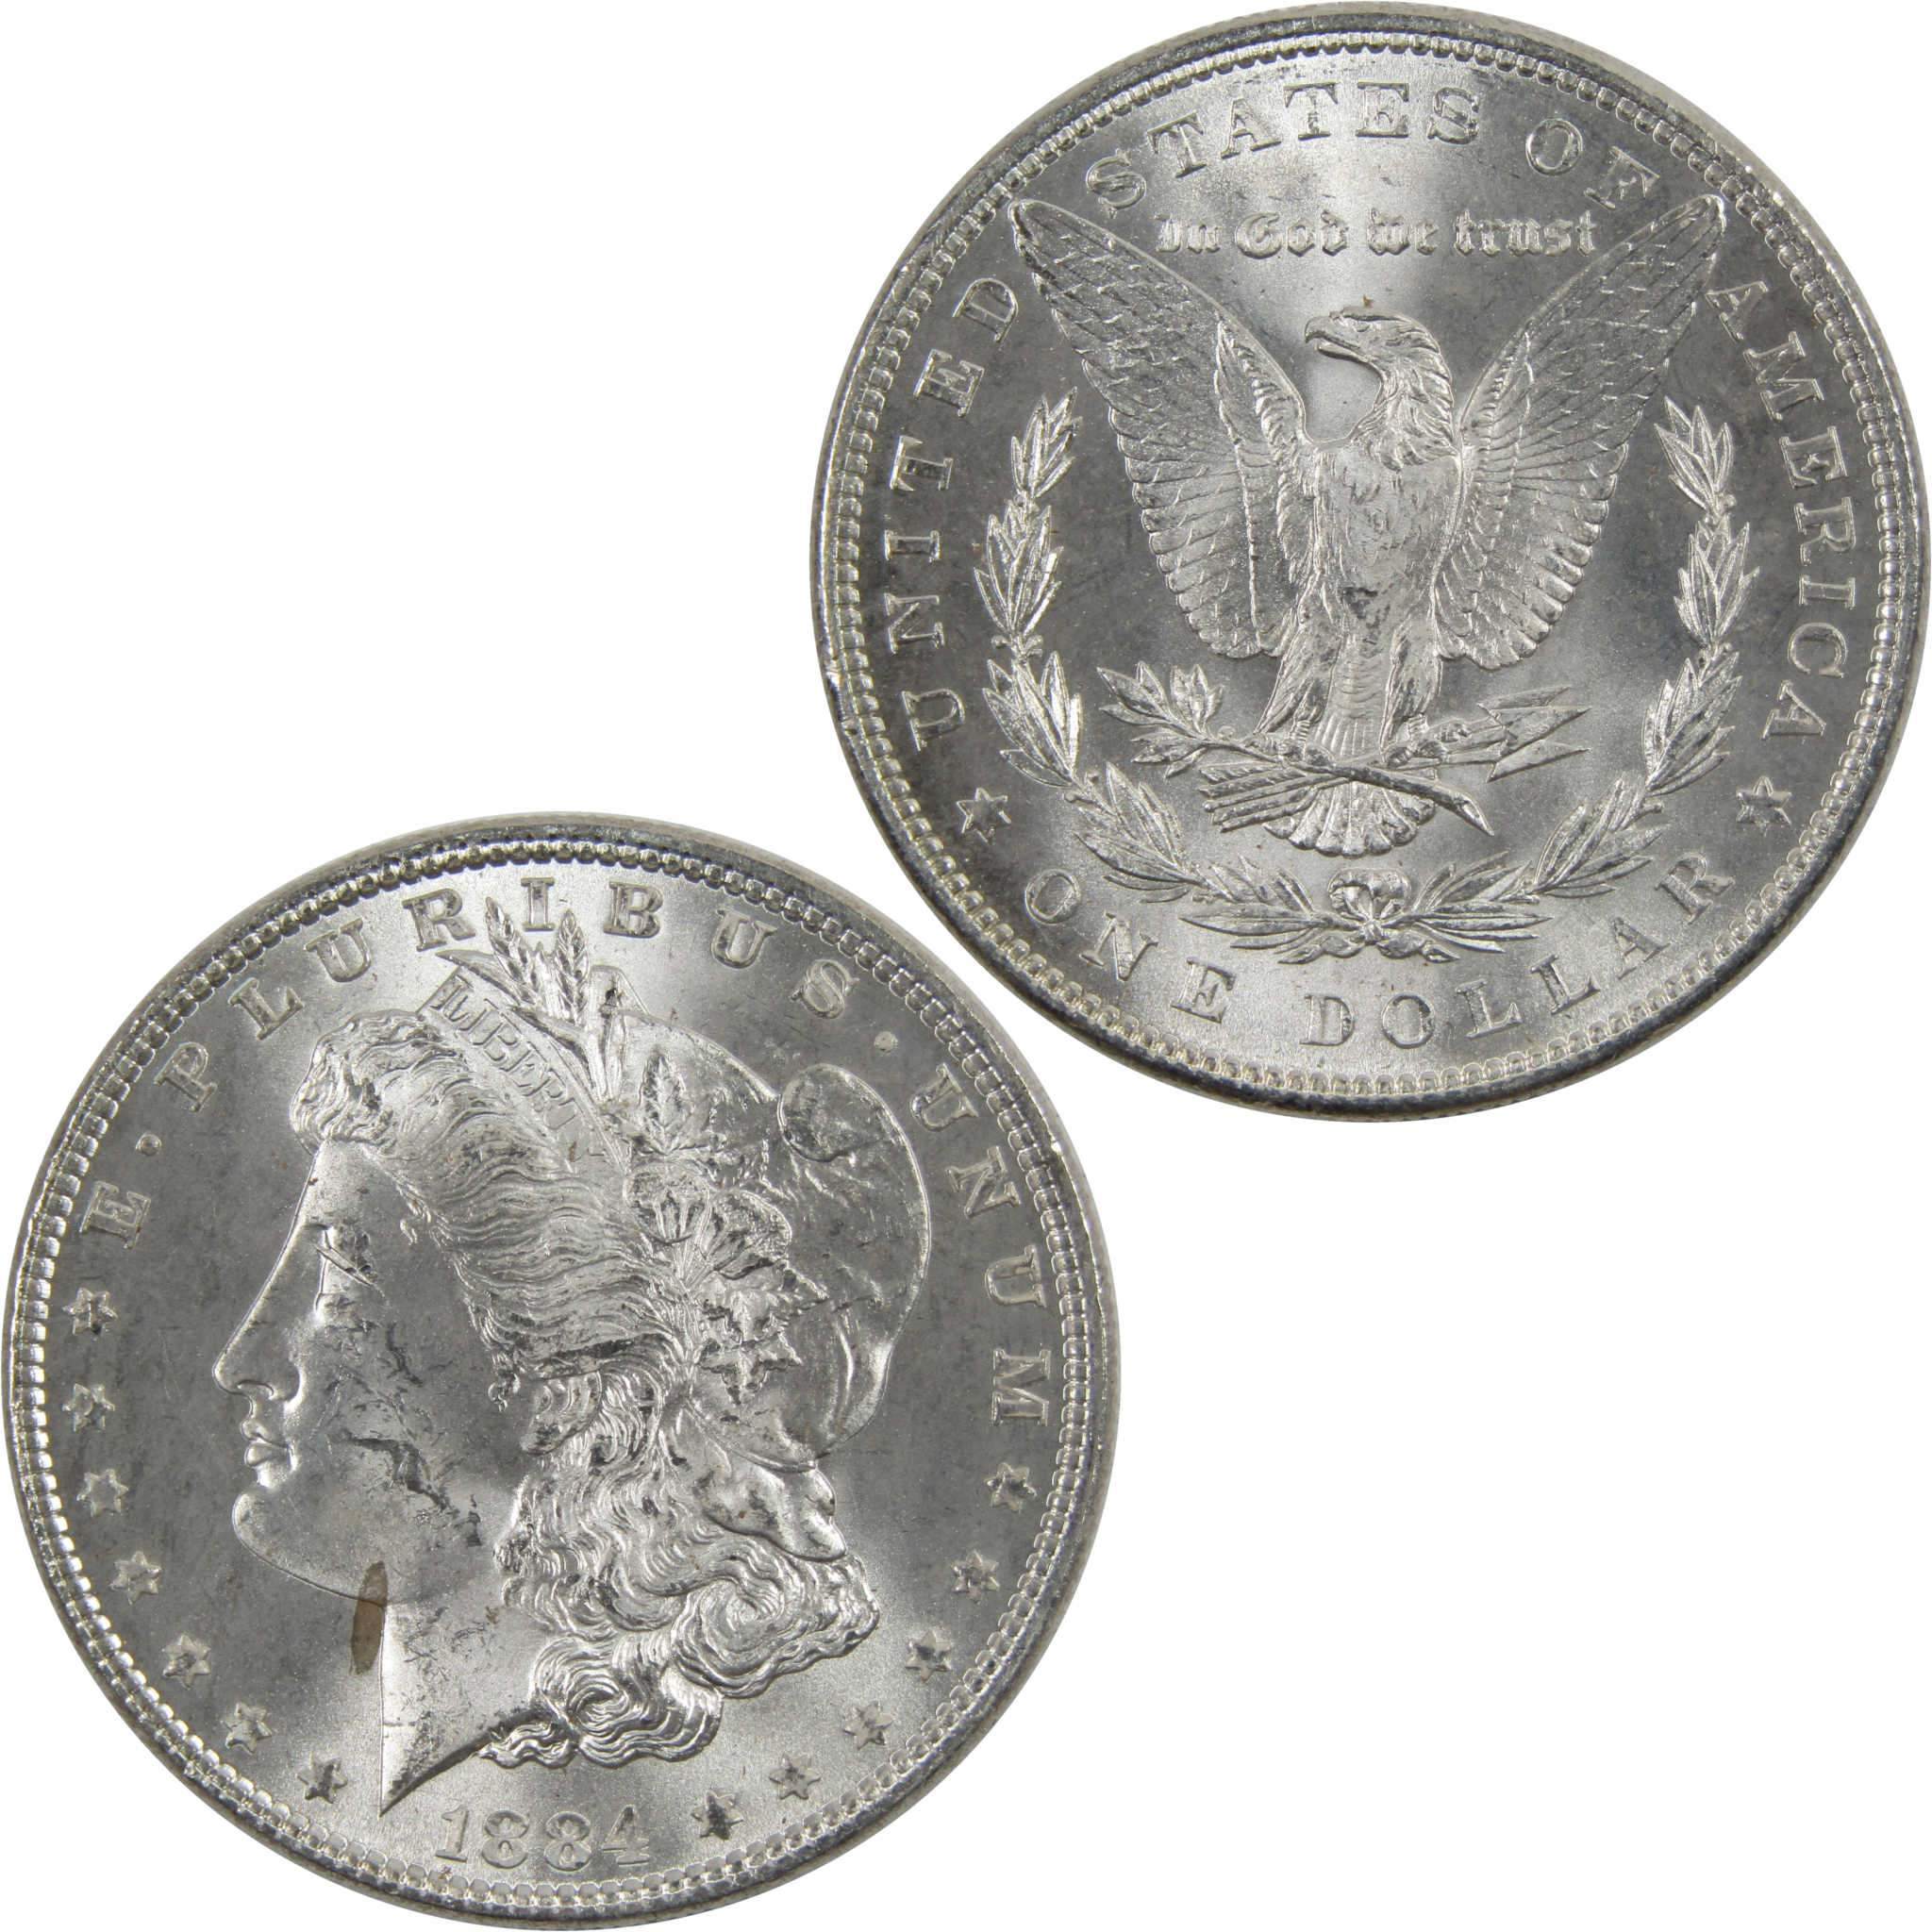 1884 Morgan Dollar BU Uncirculated 90% Silver $1 Coin SKU:I6026 - Morgan coin - Morgan silver dollar - Morgan silver dollar for sale - Profile Coins &amp; Collectibles